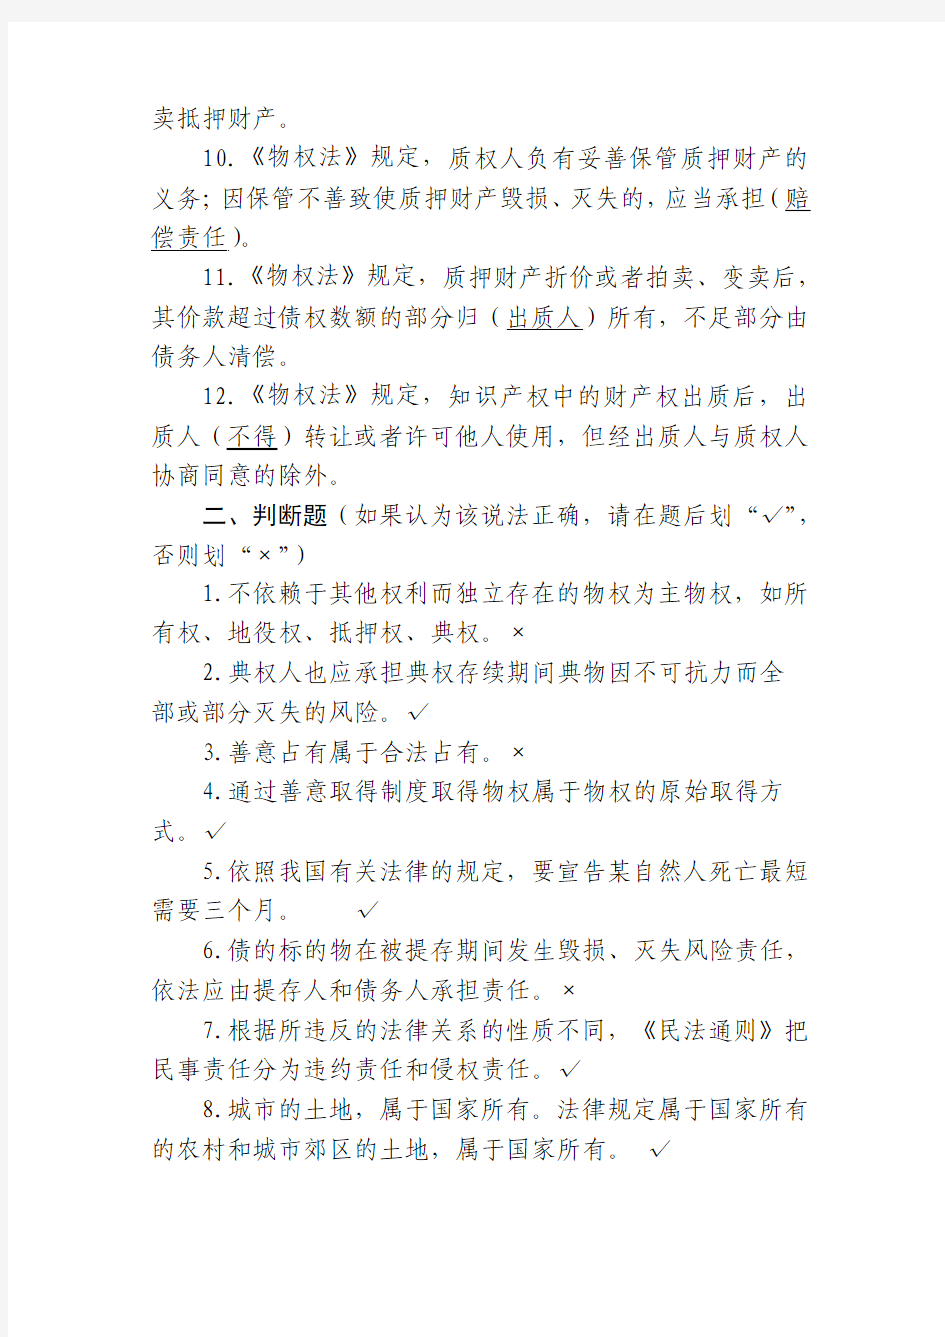 【司法考试】中华人民共和国物权法试题库(共12页)